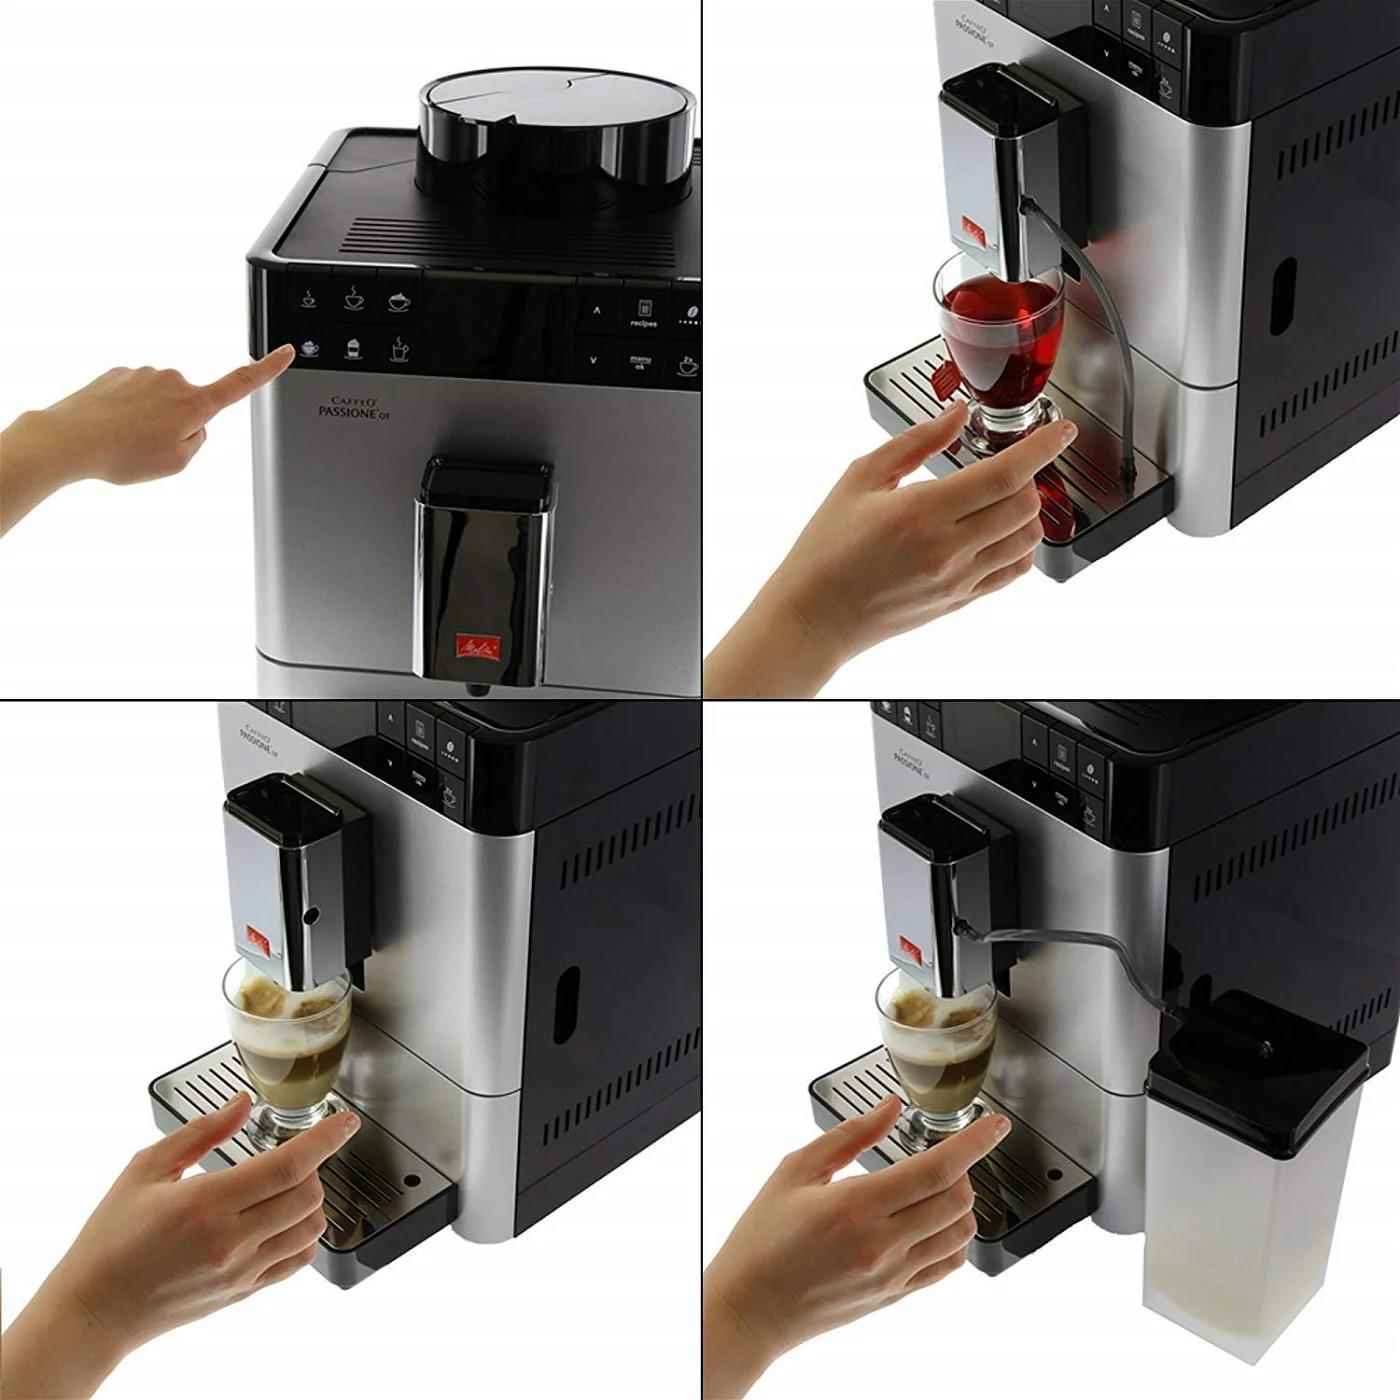 Melitta Passione One Touch automatický kávovar,  1400 W,  15 bar,  mléčný systém,  vestavěný mlýnek,  displej5 